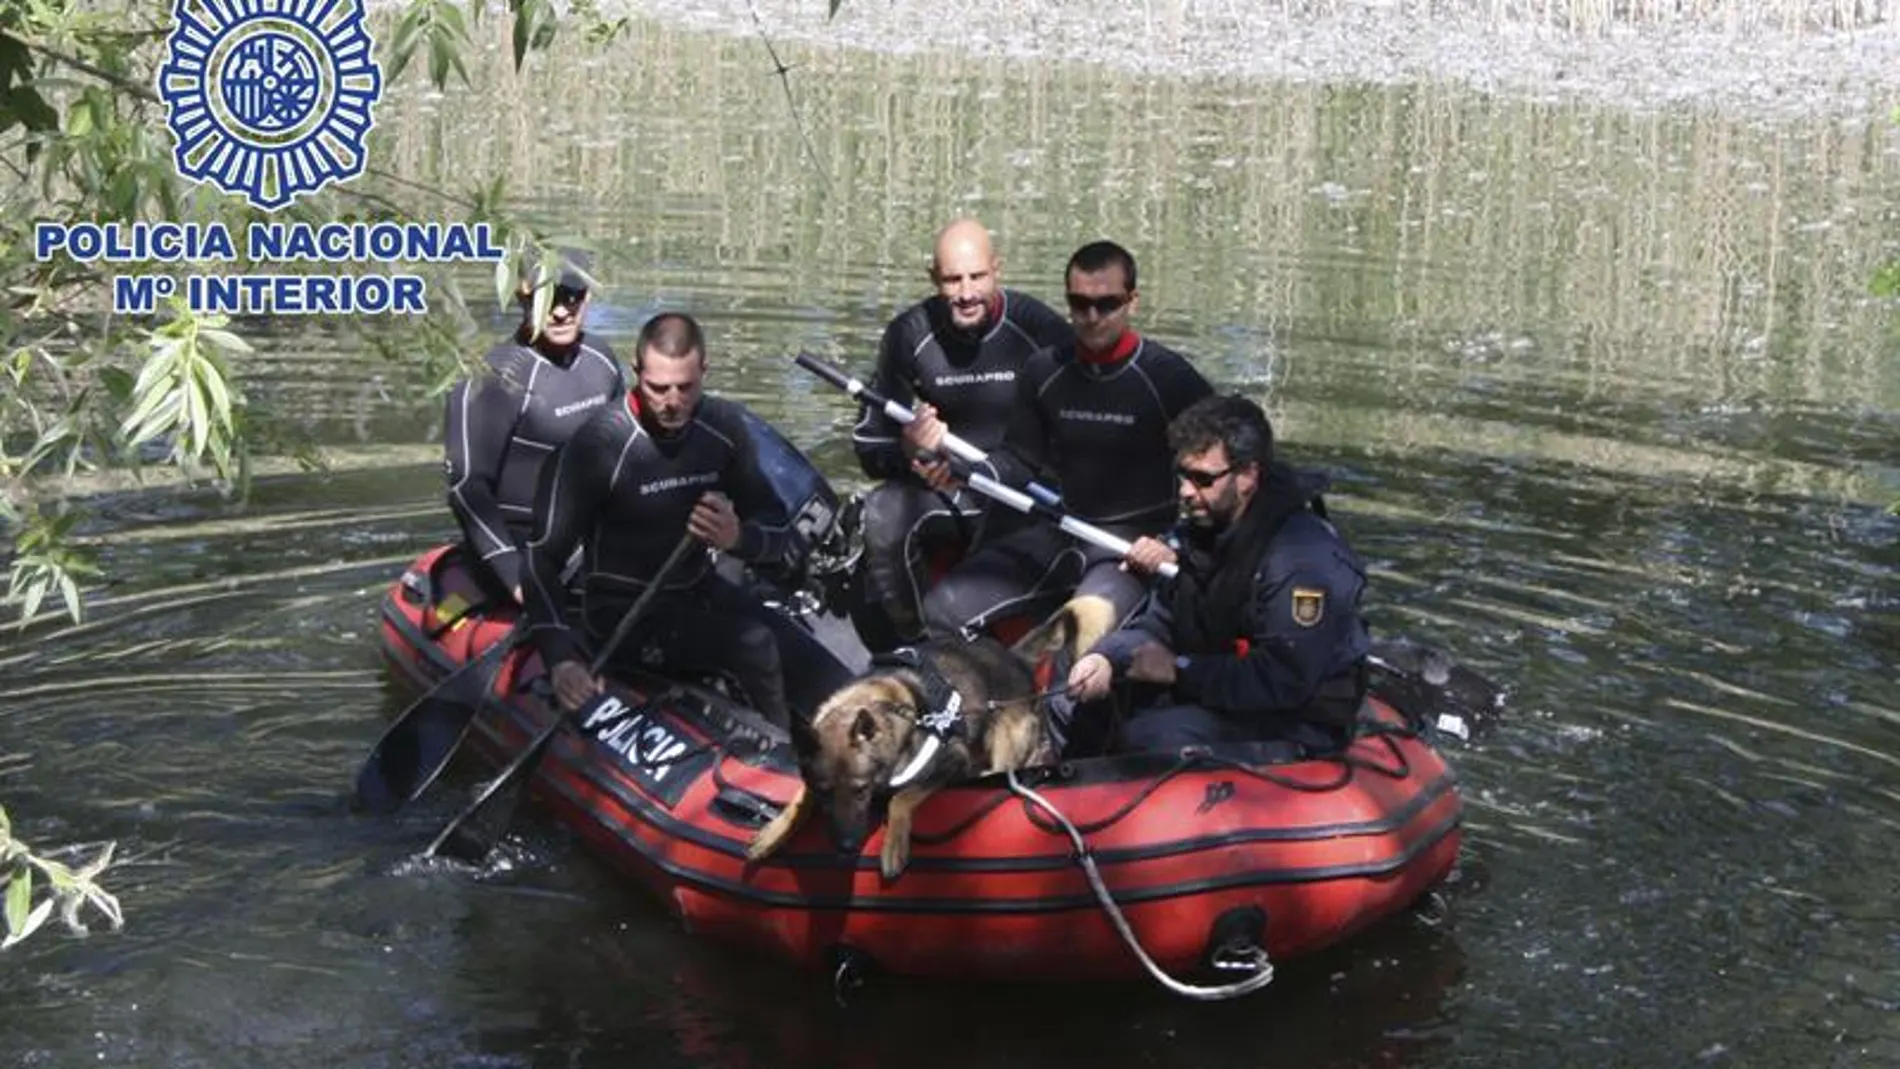  Fotografía facilitada por la Policía Nacional adiestrando a uno de sus canes en la búsqueda de restos humanos en medio acuático.